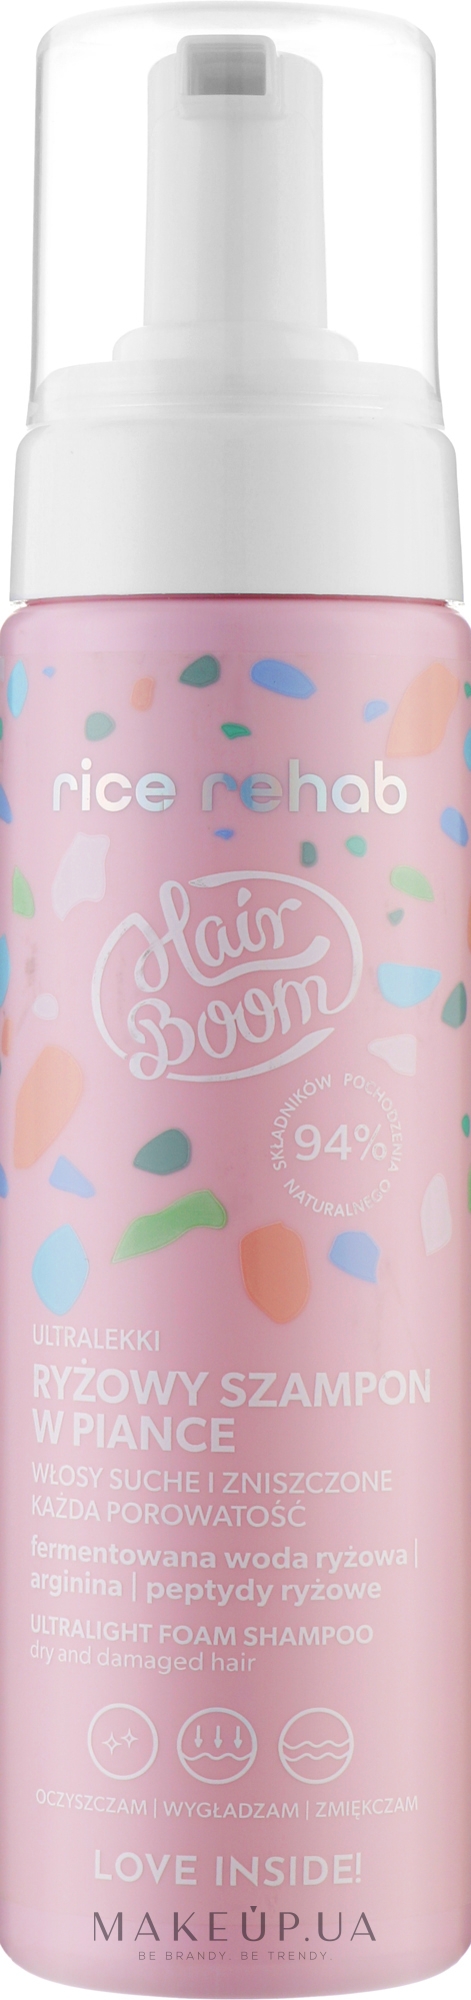 Шампунь для волос с рисовой вытяжкой - BodyBoom HairBoom Rice Rehab Shampoo  — фото 200ml